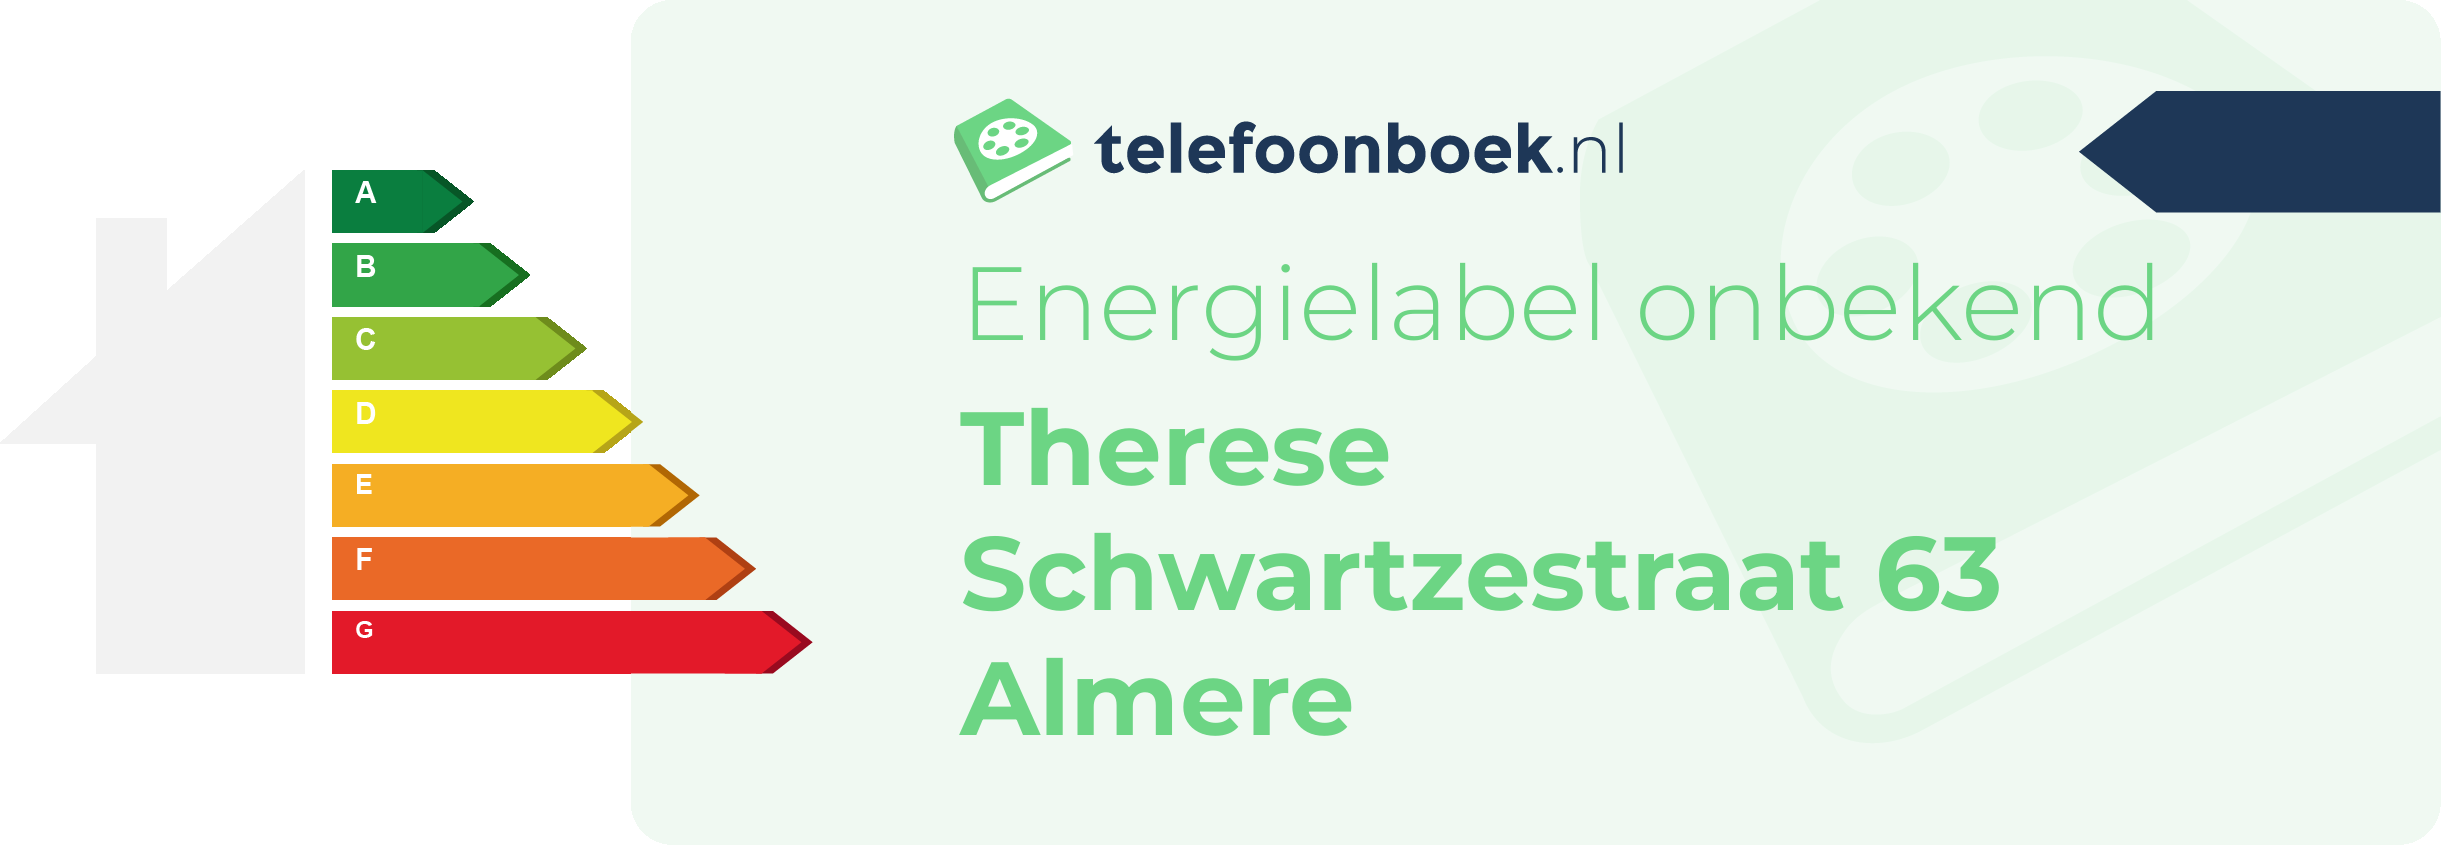 Energielabel Therese Schwartzestraat 63 Almere